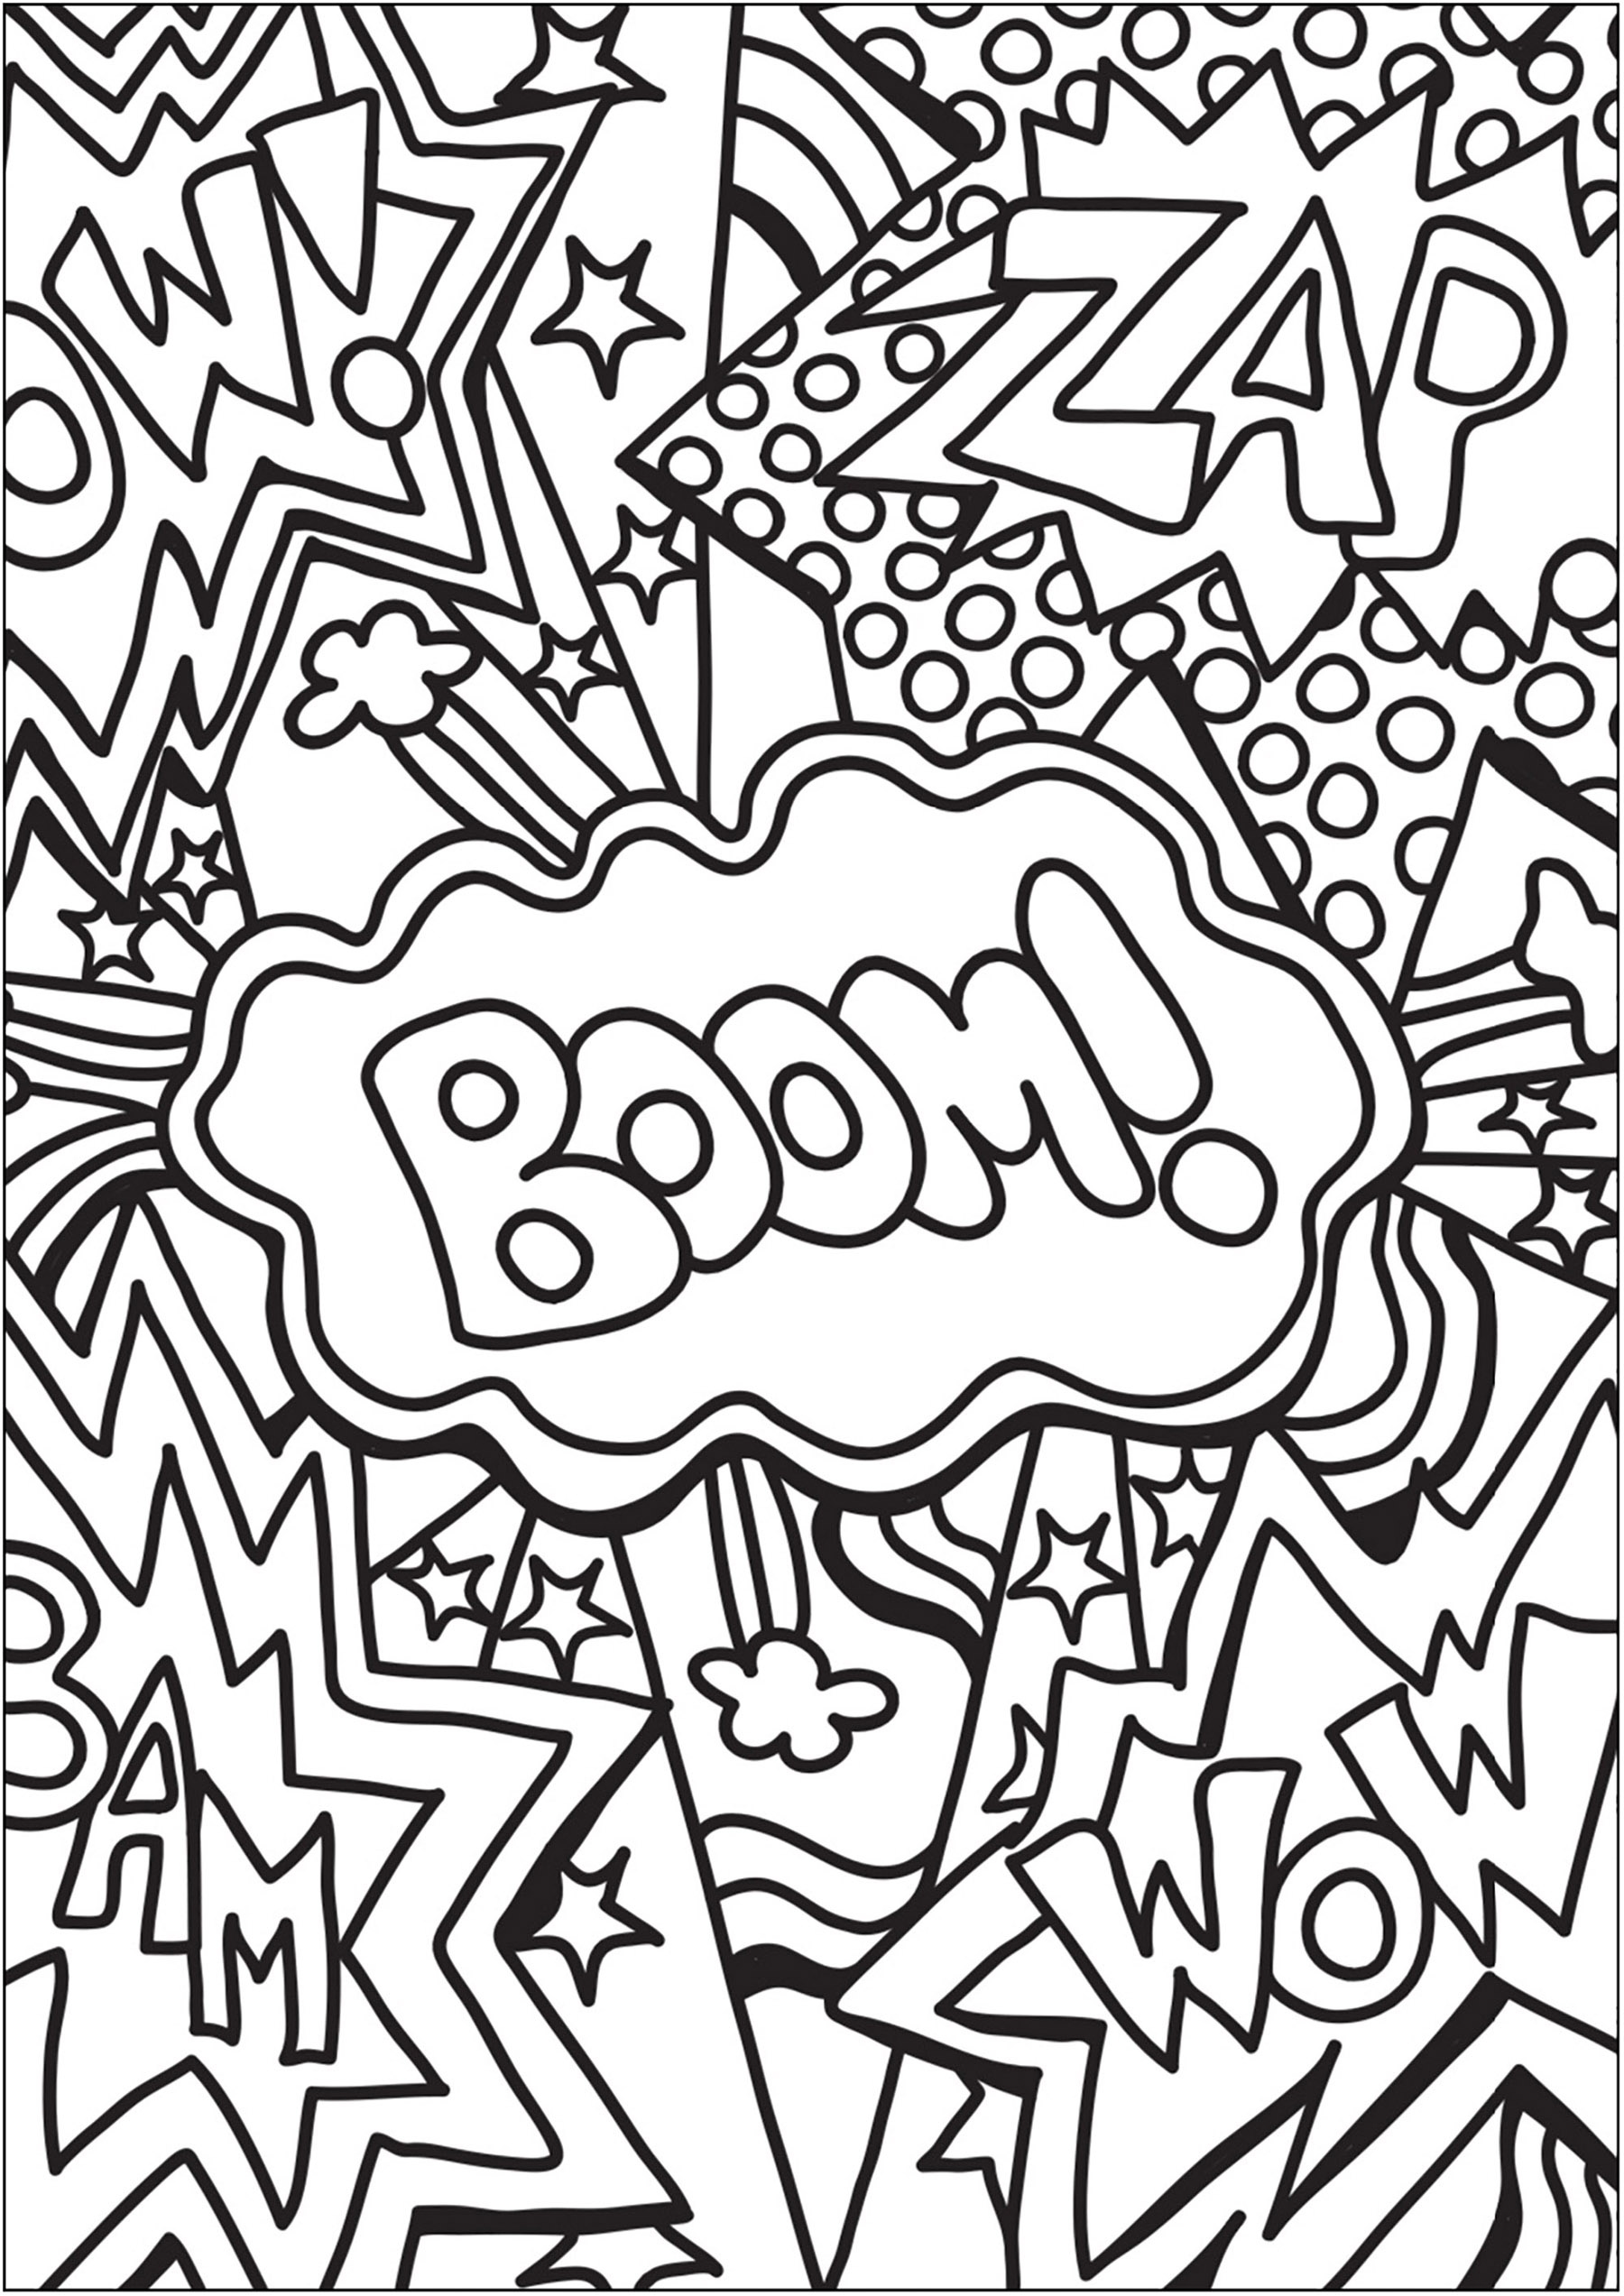 Doodle com palavras de Banda Desenhada e BD. Boom, Zap, Wow, Bam ...